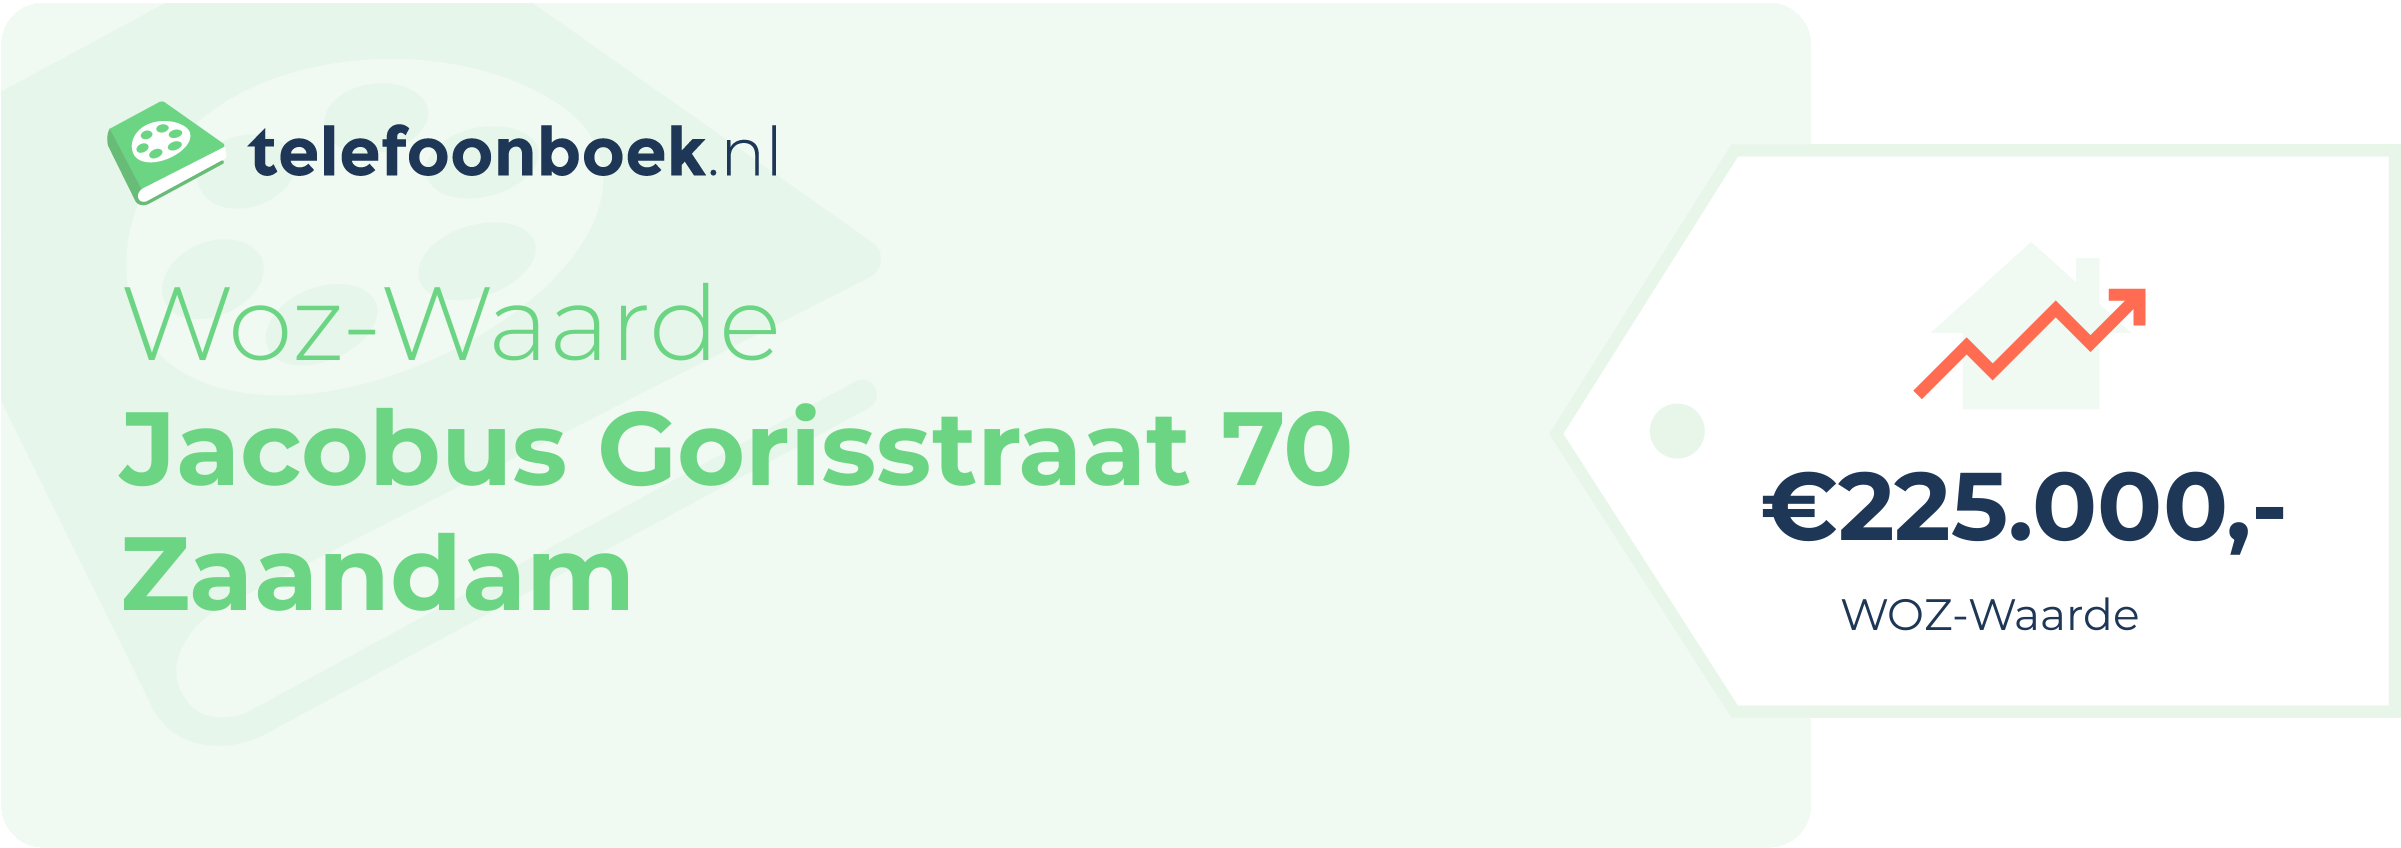 WOZ-waarde Jacobus Gorisstraat 70 Zaandam